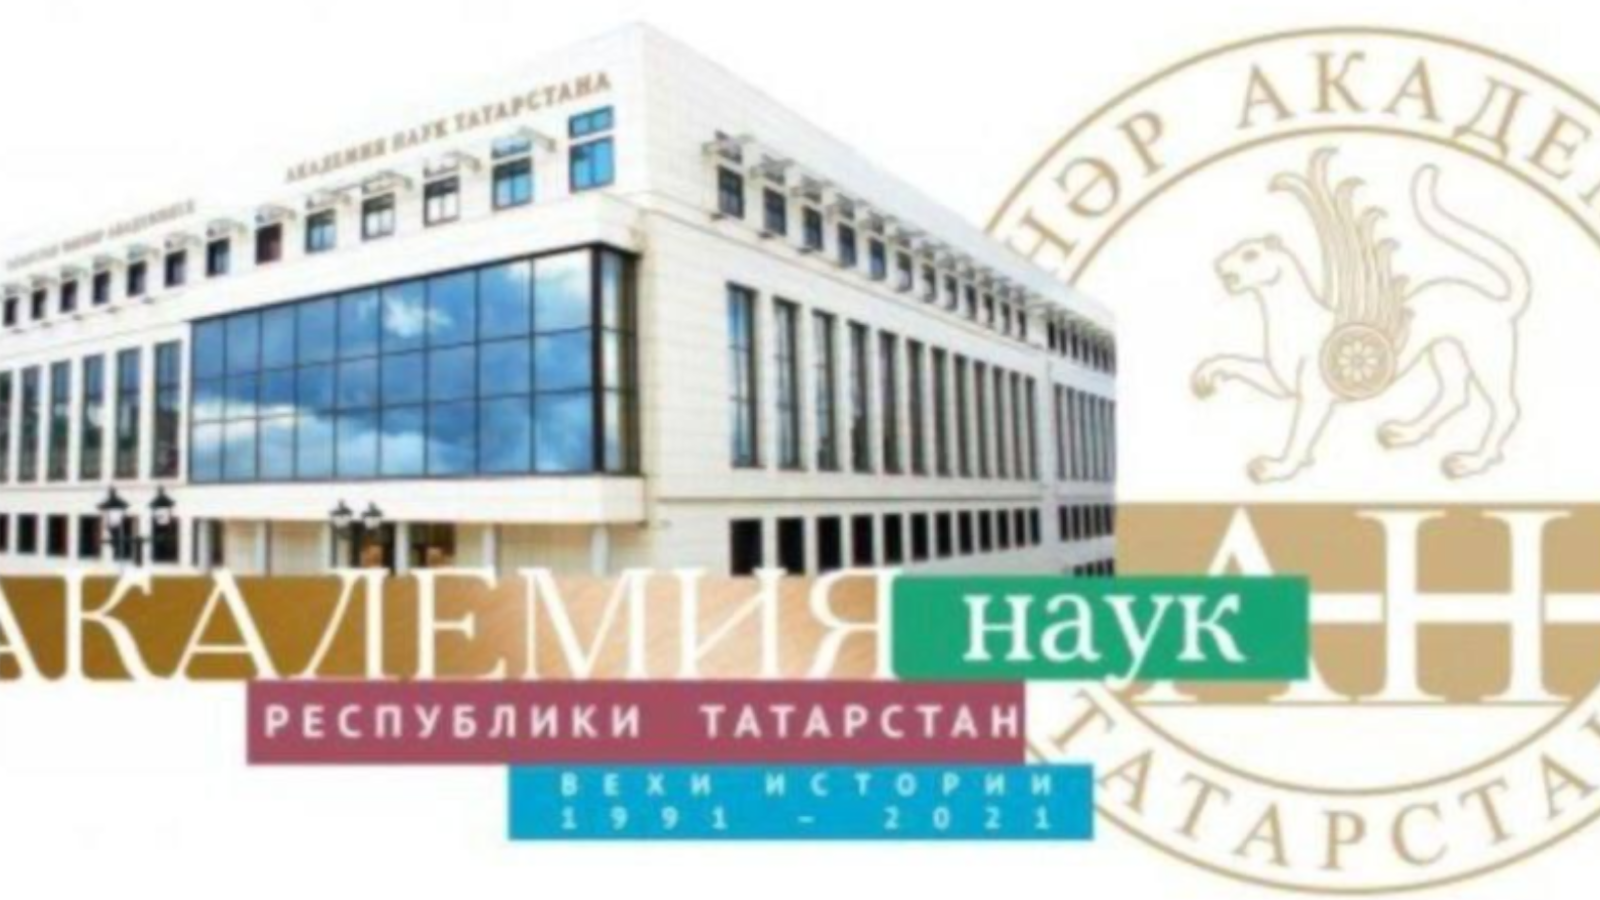 30 сентября 1991 г. создана Академия наук Татарстана